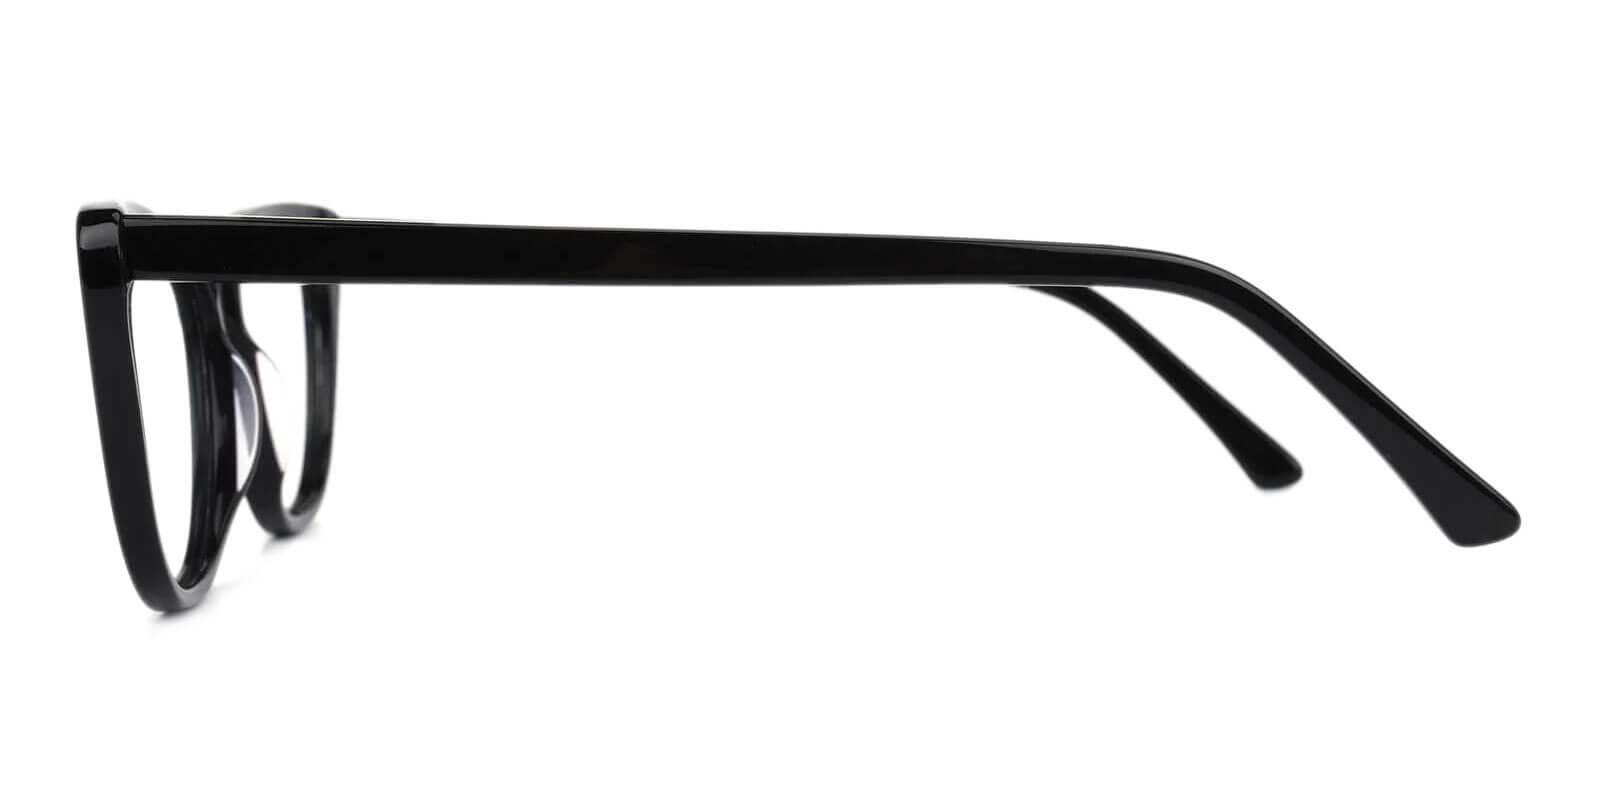 Yuke Black Acetate Eyeglasses , SpringHinges , UniversalBridgeFit Frames from ABBE Glasses